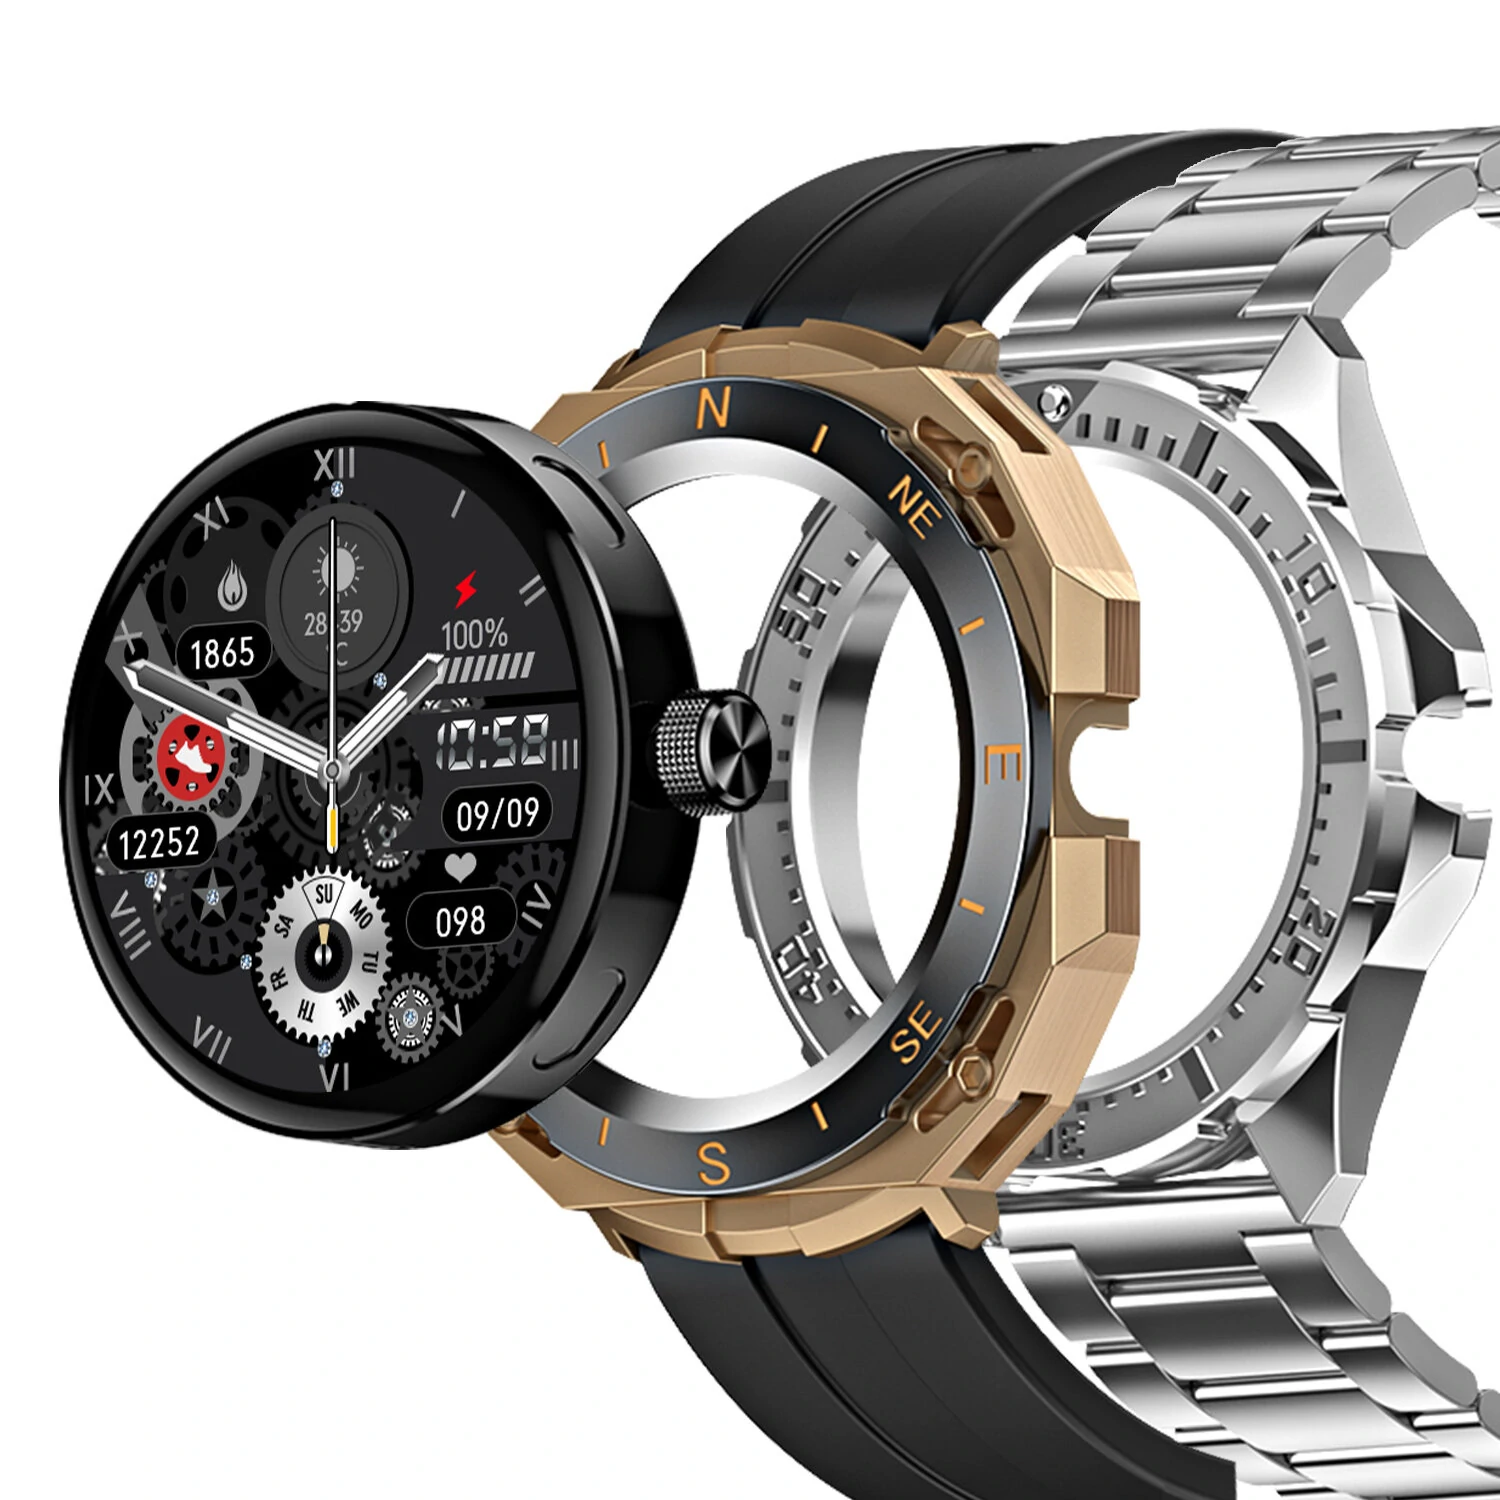 BlitzWolf BW-AT3 是可客製化最強的智慧手錶，價格僅 10 福林